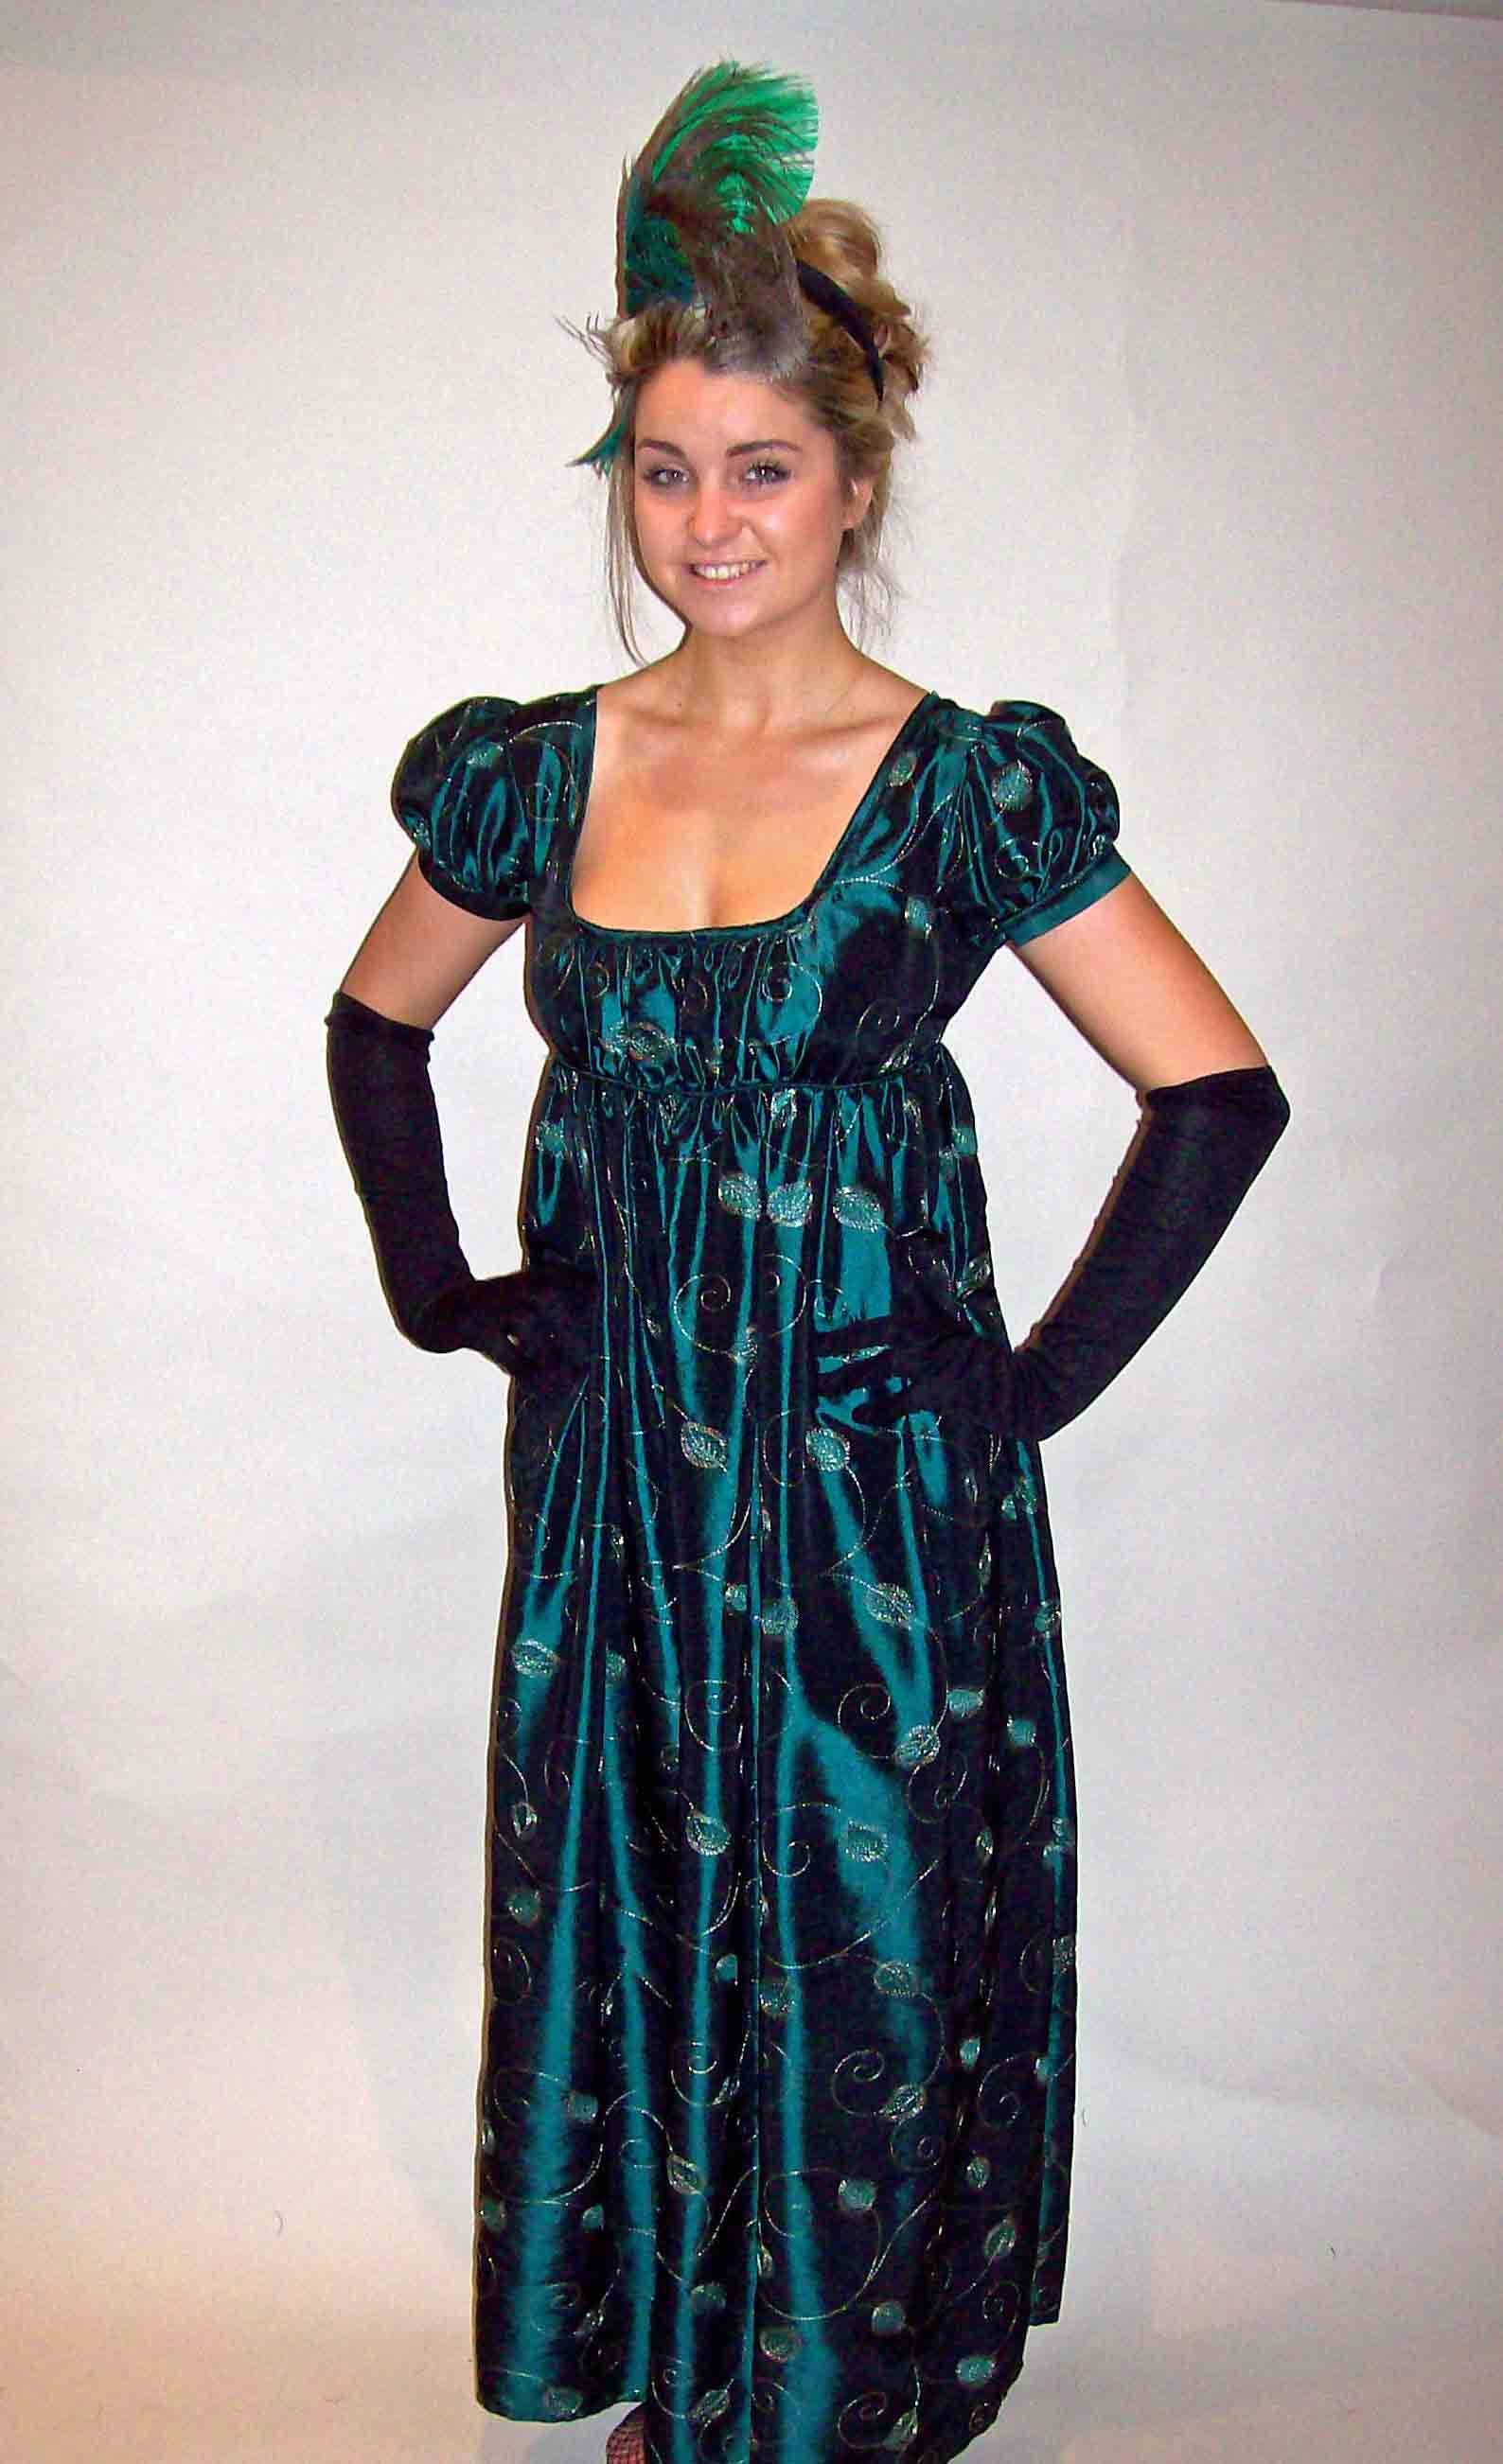 Regency Fancy Dress Costume Hire